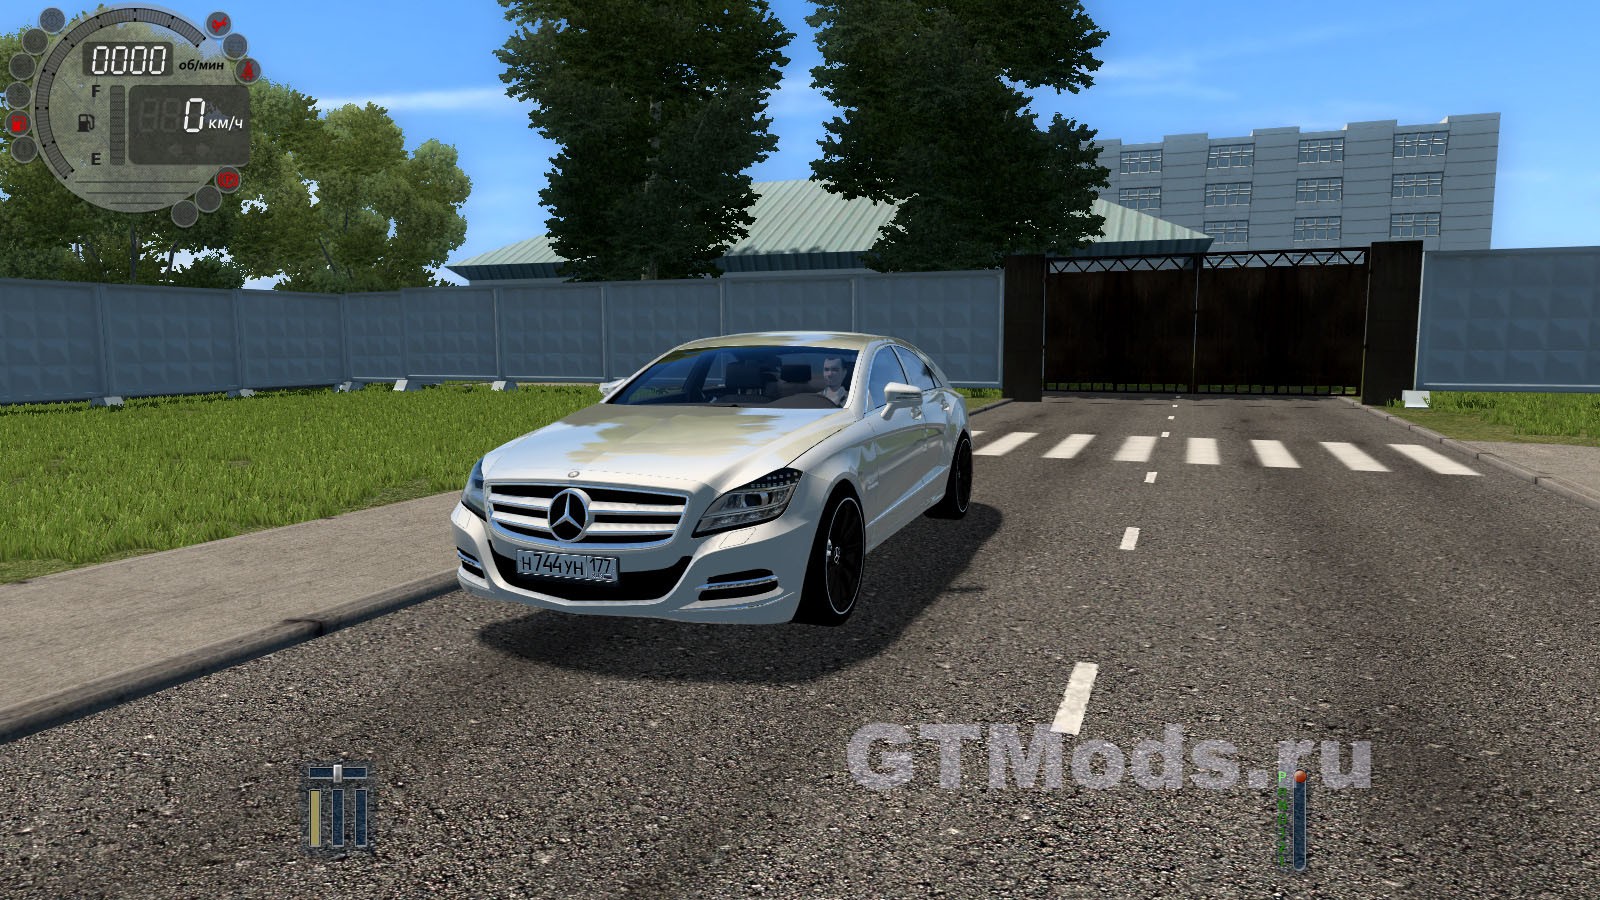 Mercedes cls63 AMG для City car Driving. CLS 63 AMG City car Driving. CLS 63 BEAMNG. Кар паркинг с модом на КЛС 63 АМГ.